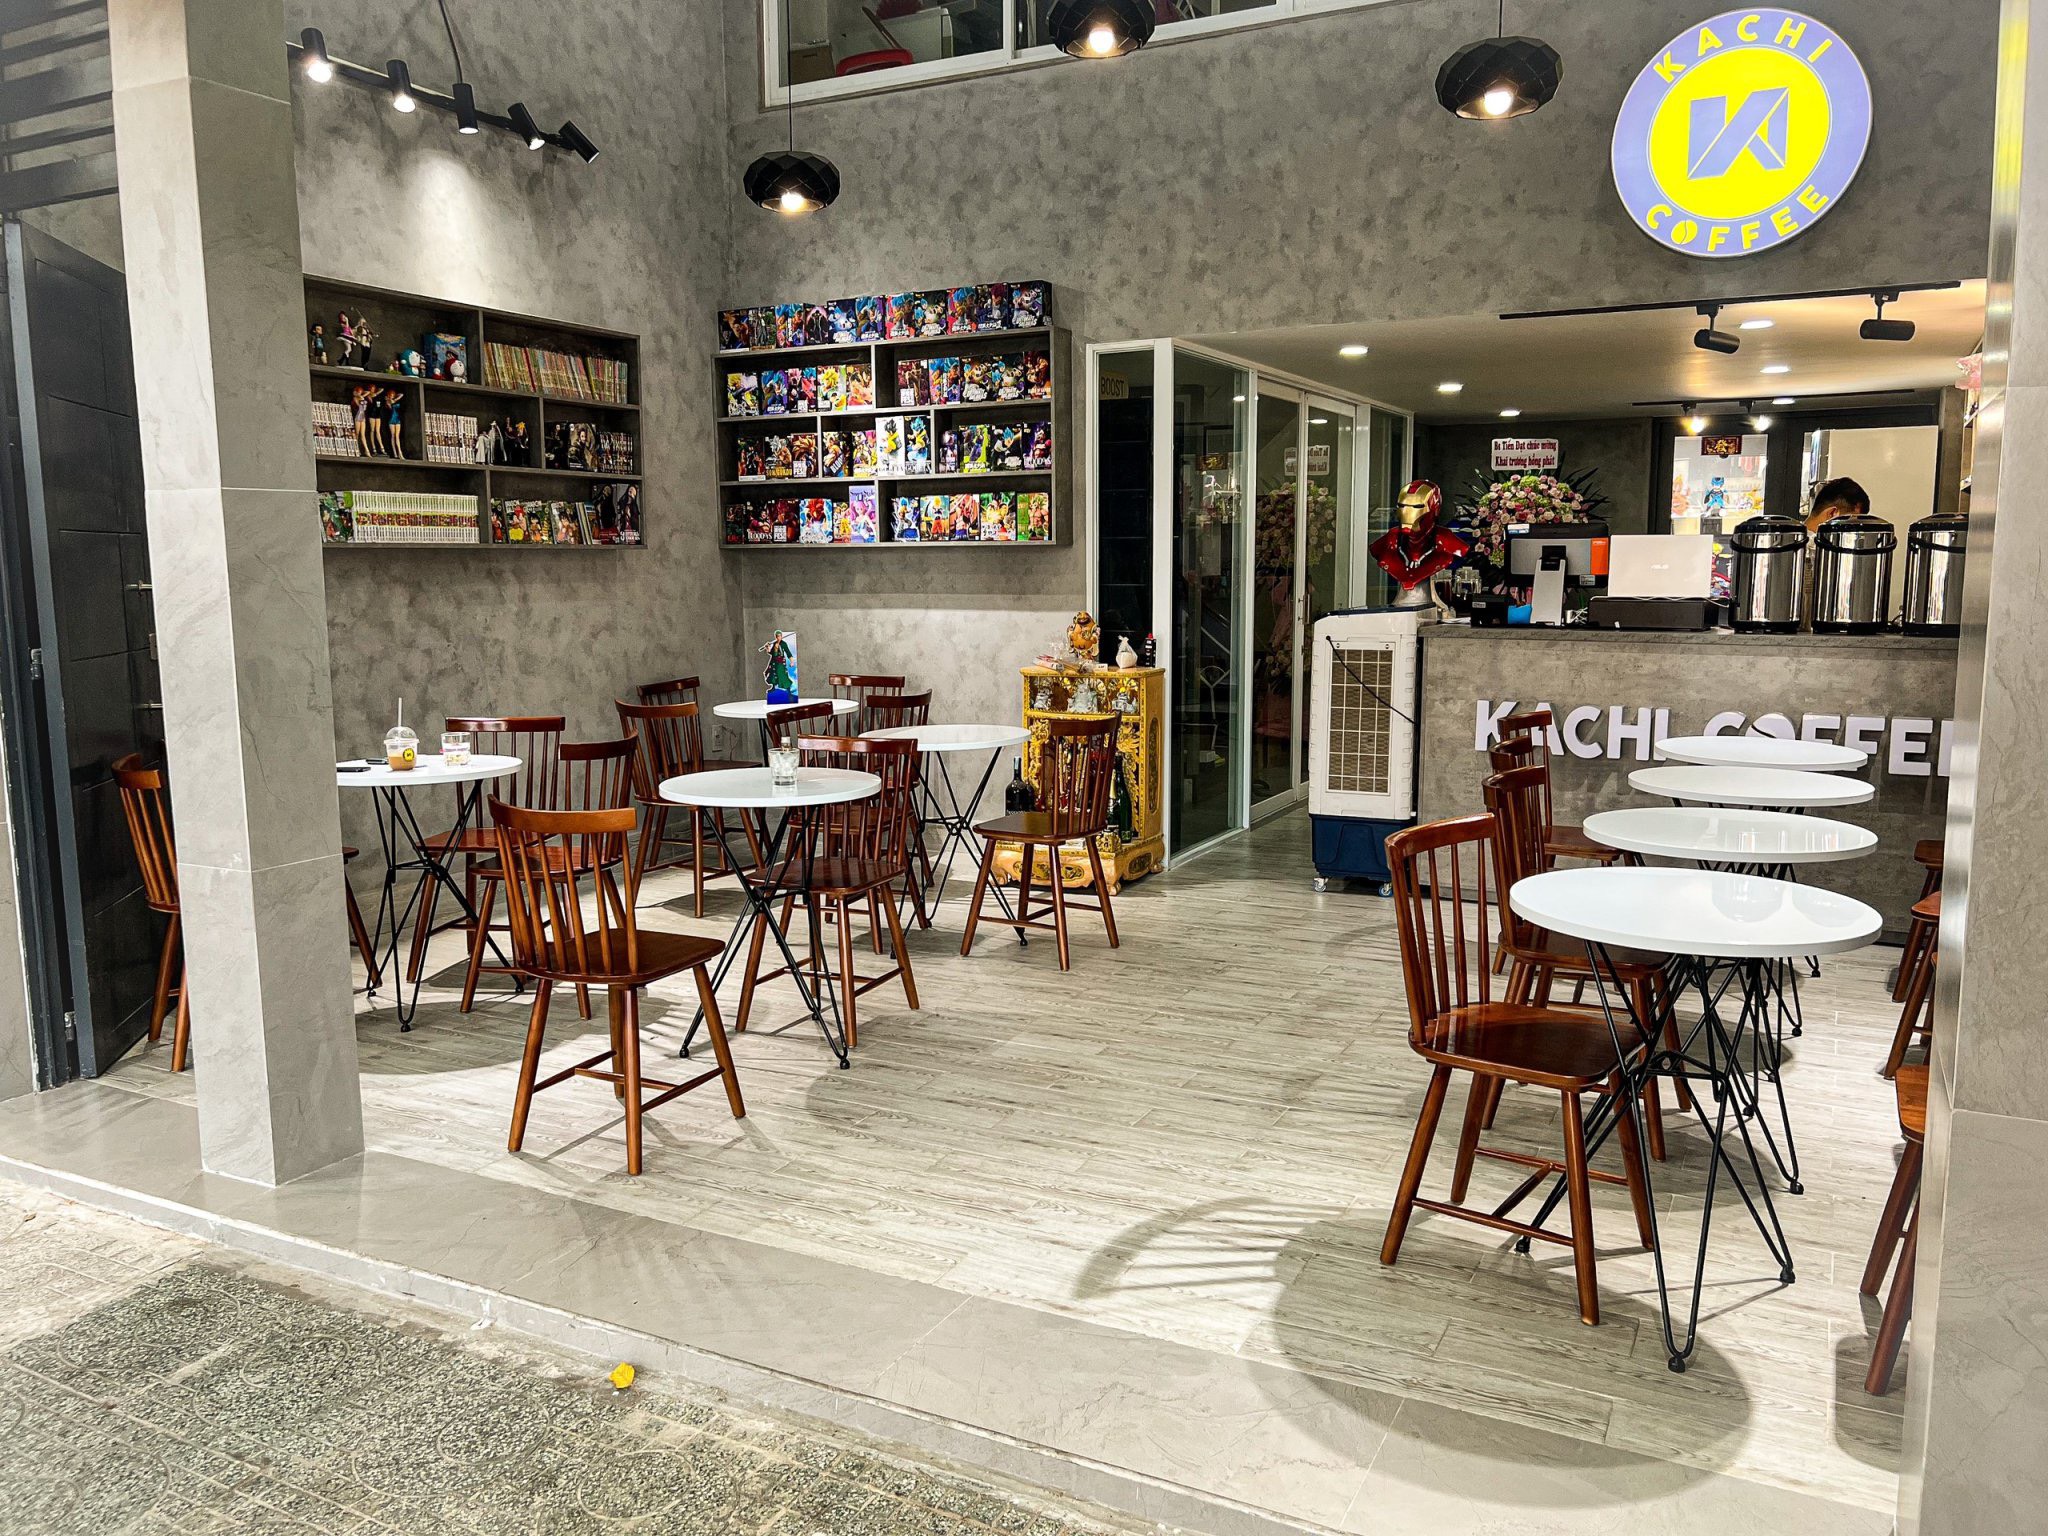 Kachi Cafe- Thiết kế quán cafe phong cách hiện đại, sang trọng tại TPHCM |  Nội Thất Thu Hà